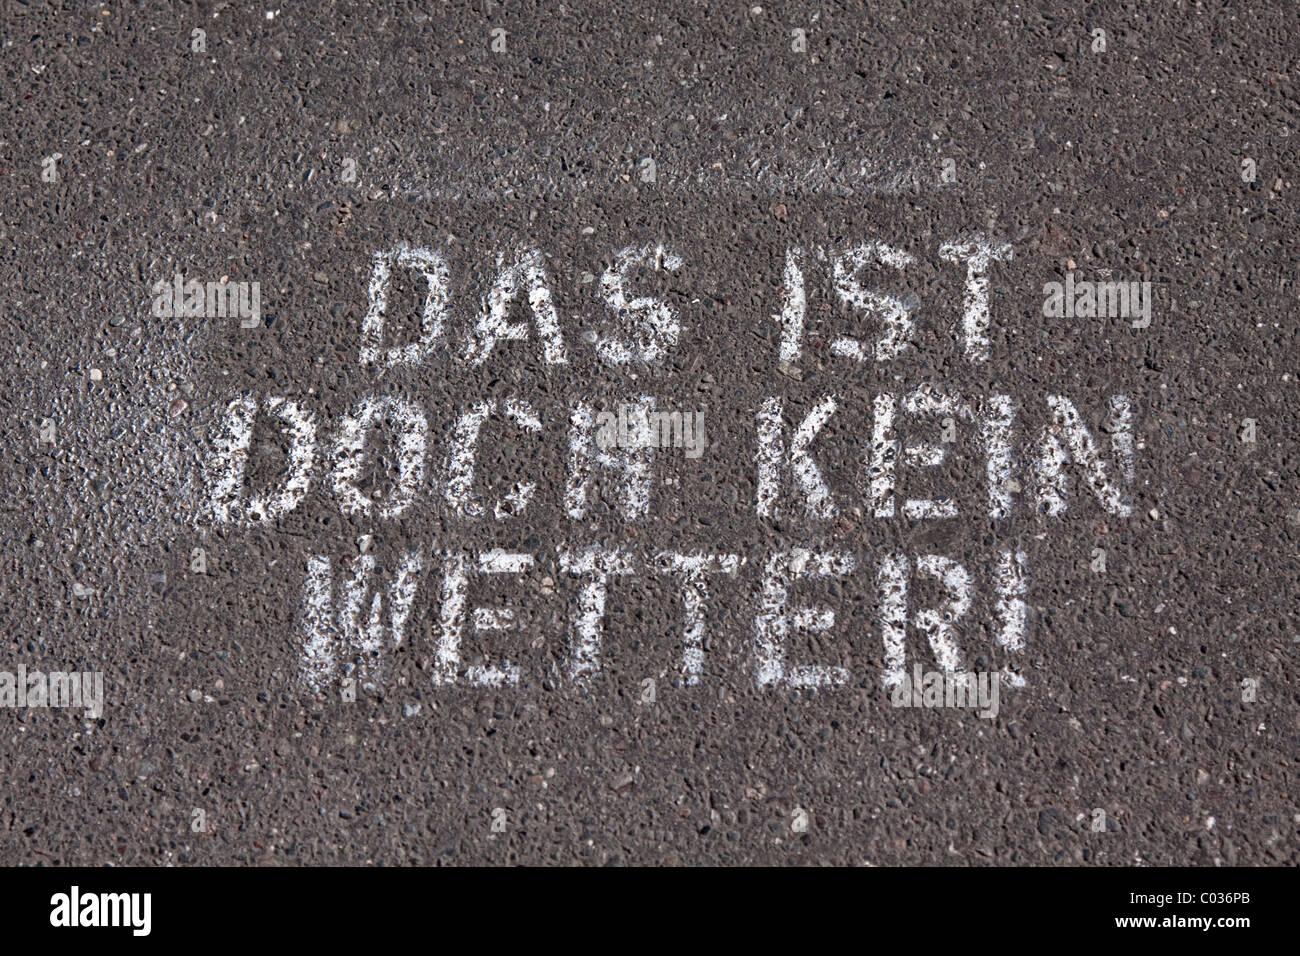 Lettering spruzzato su un marciapiede, Das ist doch kein Wetter!, Tedesco per quello non è il meteo! Foto Stock